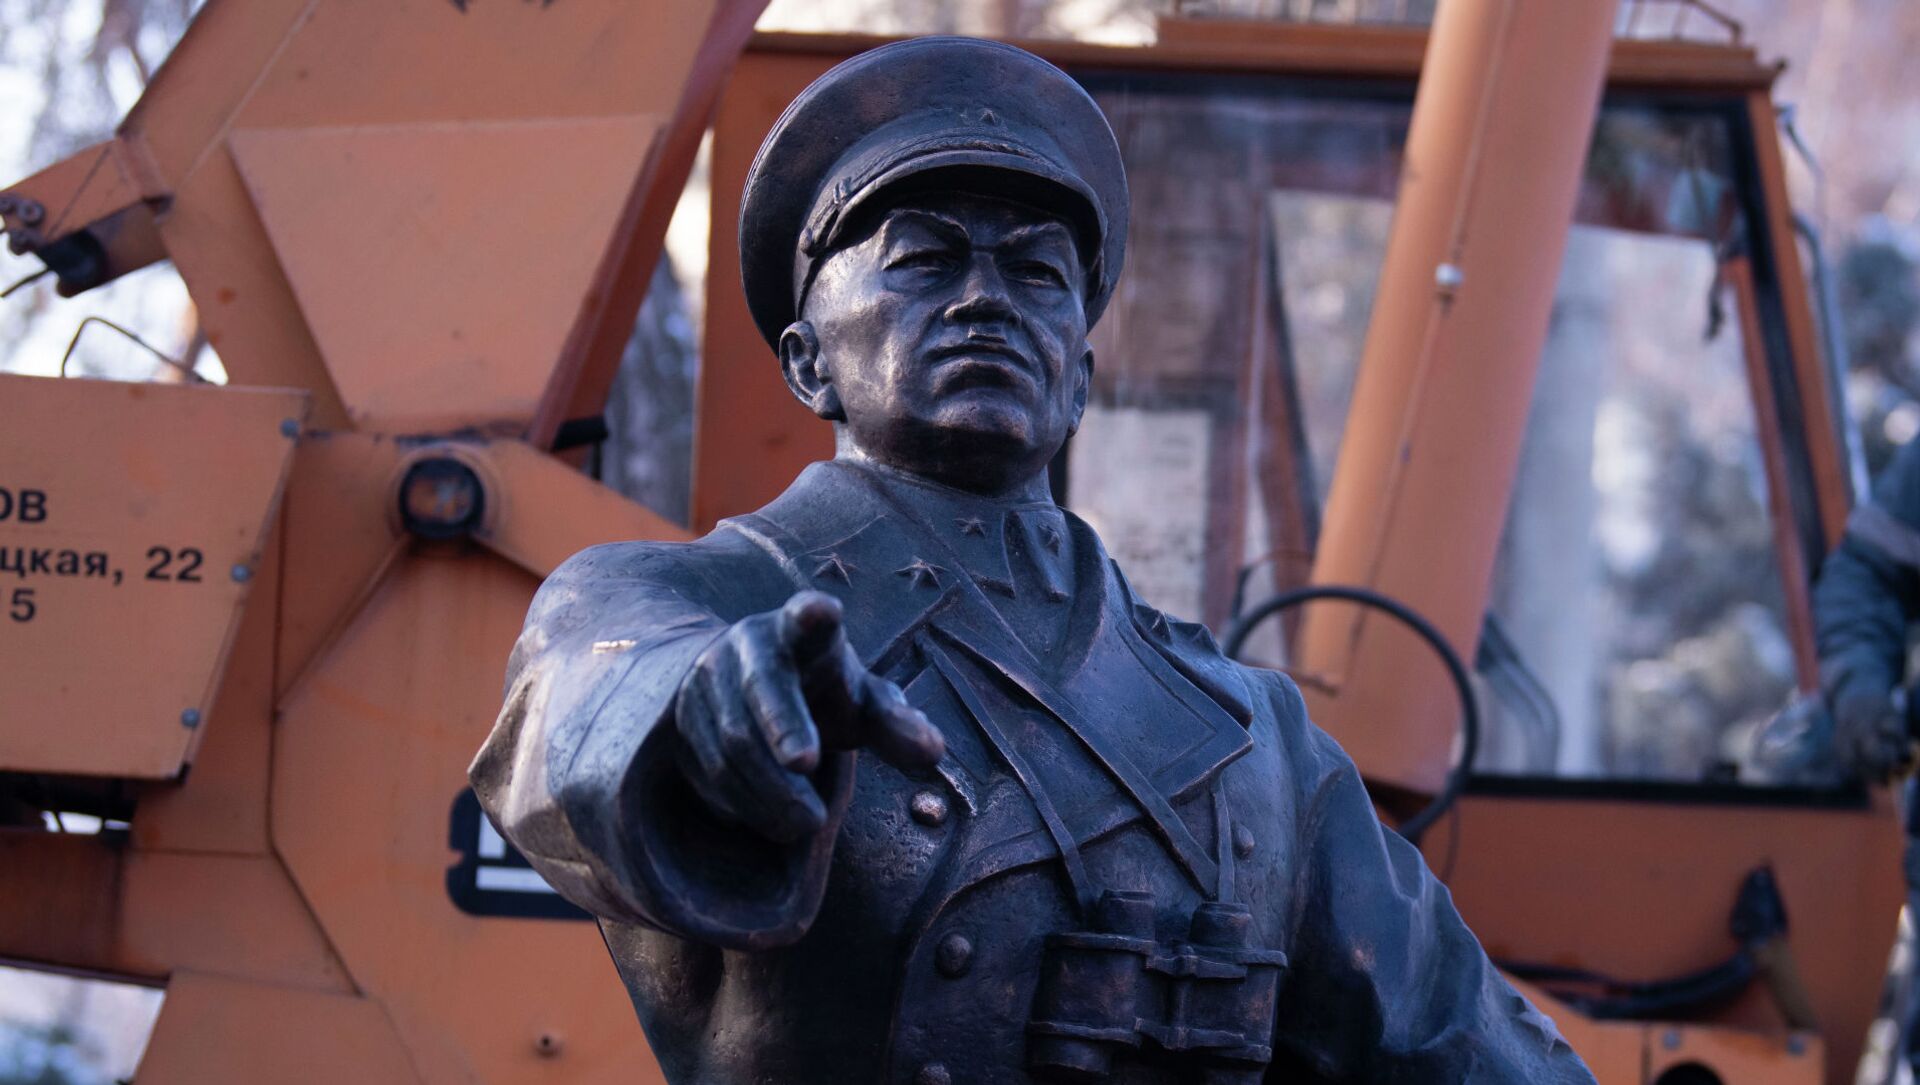 Замена памятника легендарному полководцу Панфилову - Sputnik Кыргызстан, 1920, 02.12.2021